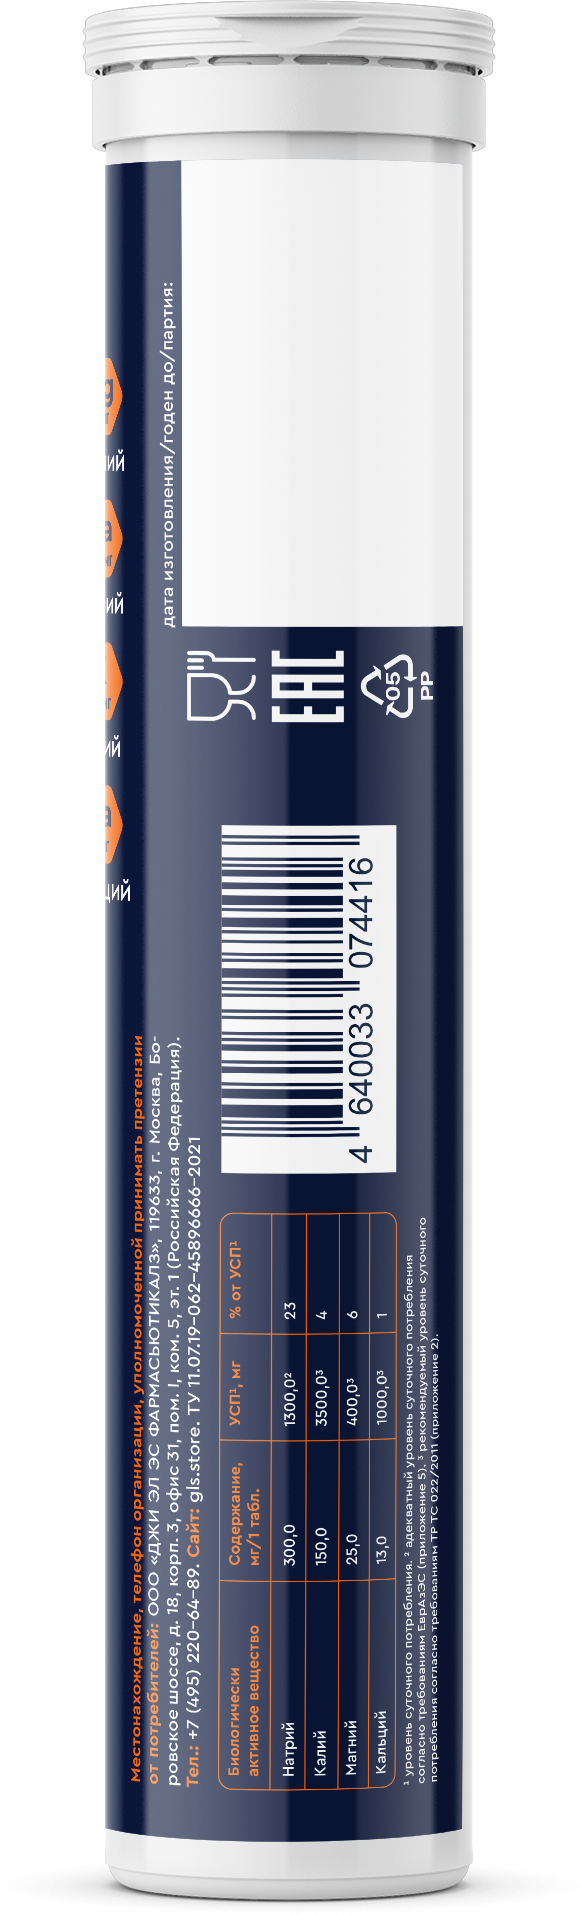 Изотоник (электролиты) шипучие таблетки для восстановления и работоспособности, 20 шт, со вкусом апельсин. Содержит магний, кальций, калий, натрий